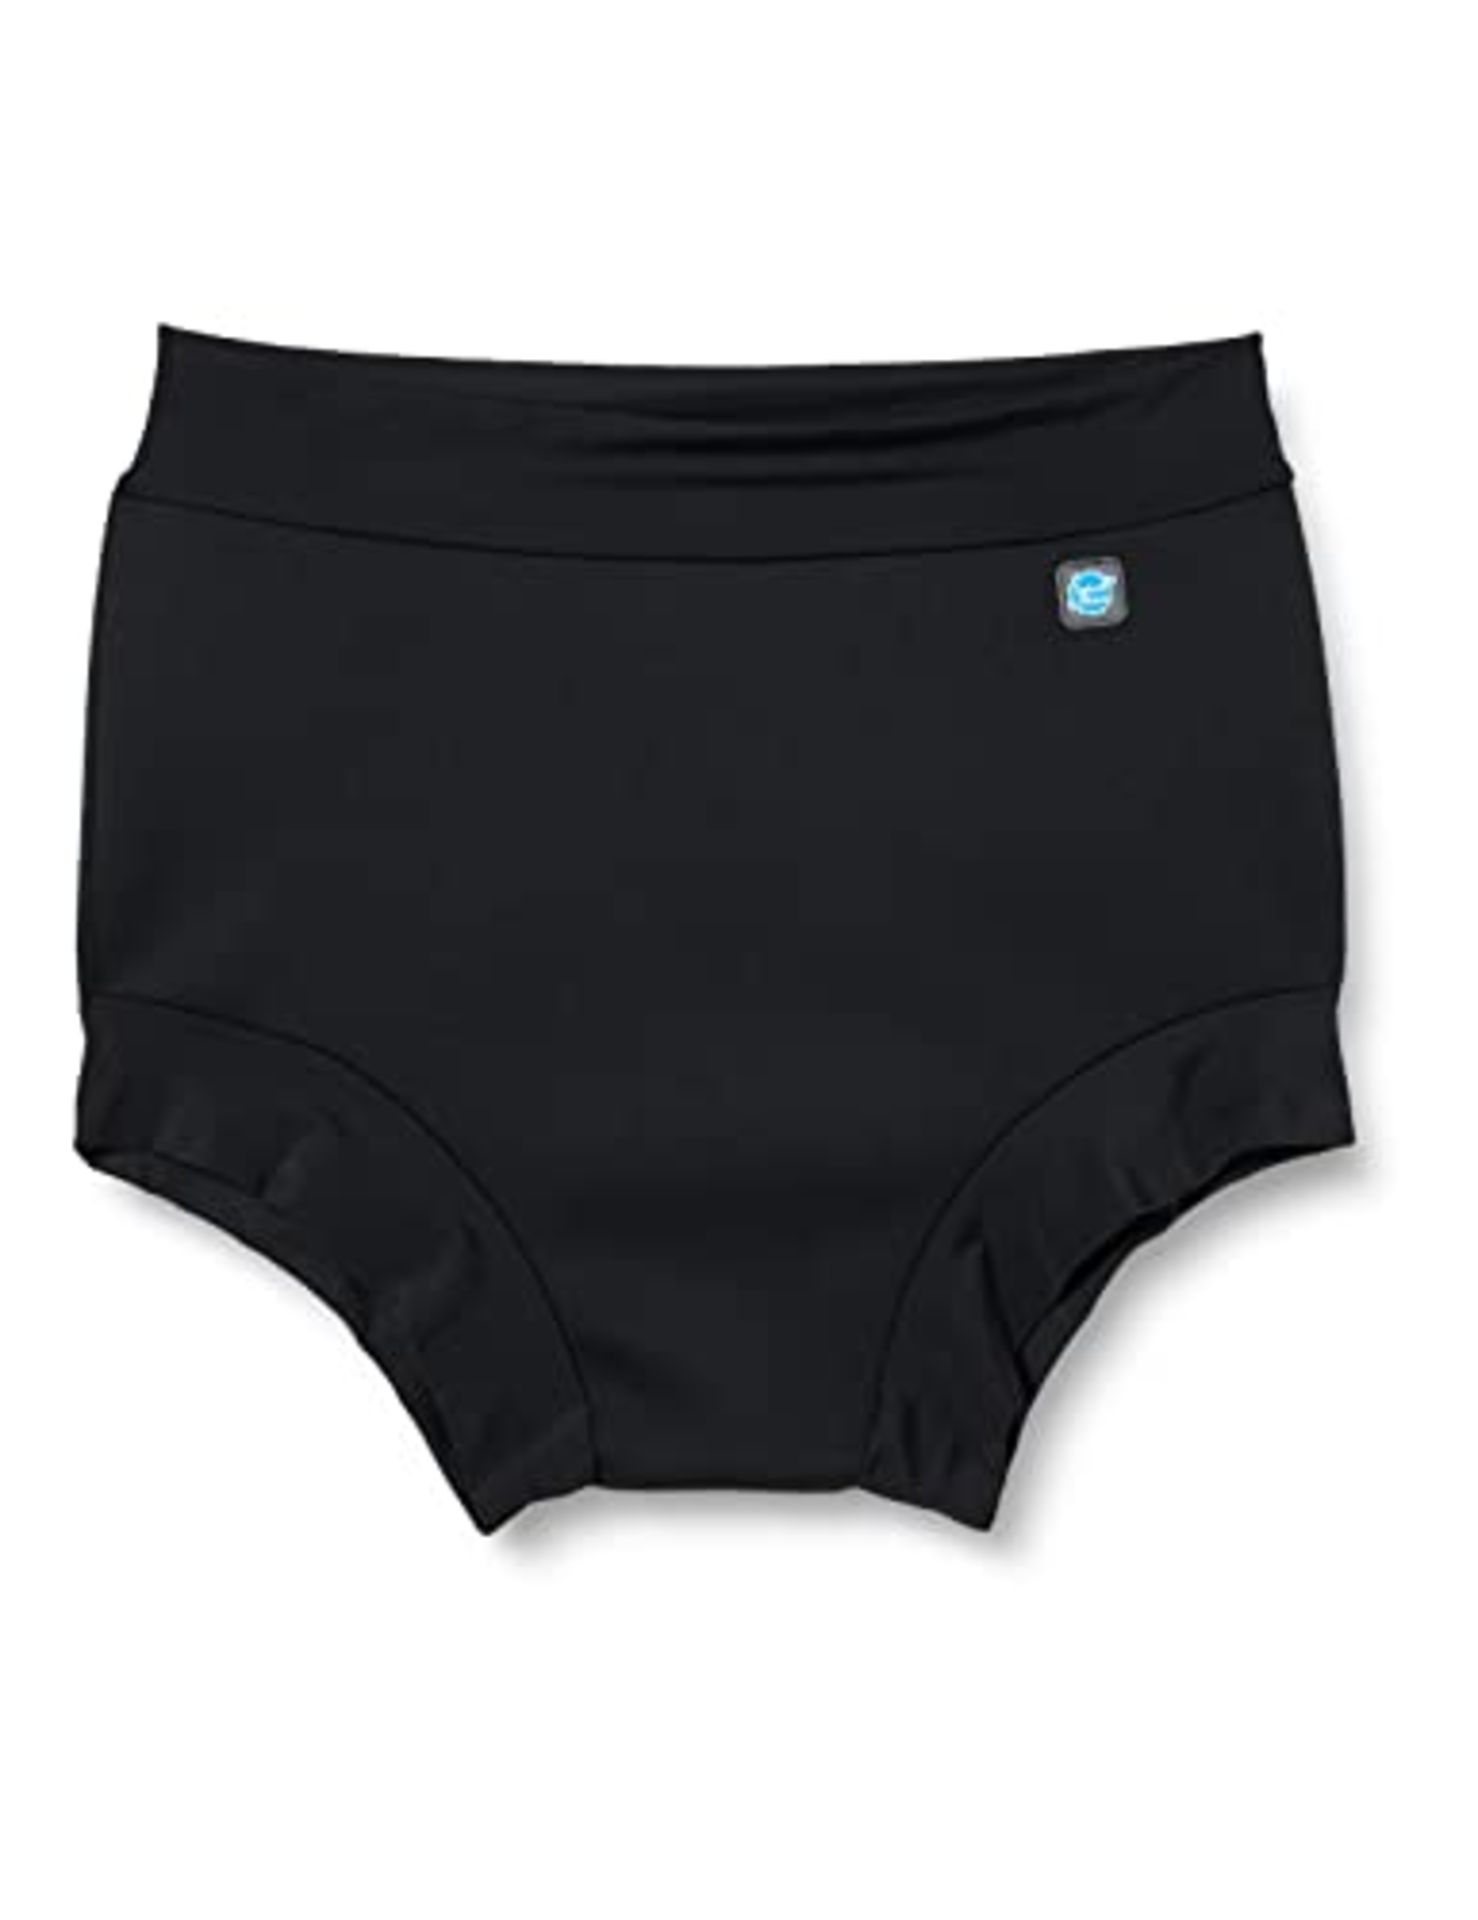 Splash About swim shorts for adults - Black, Medium - Image 4 of 6